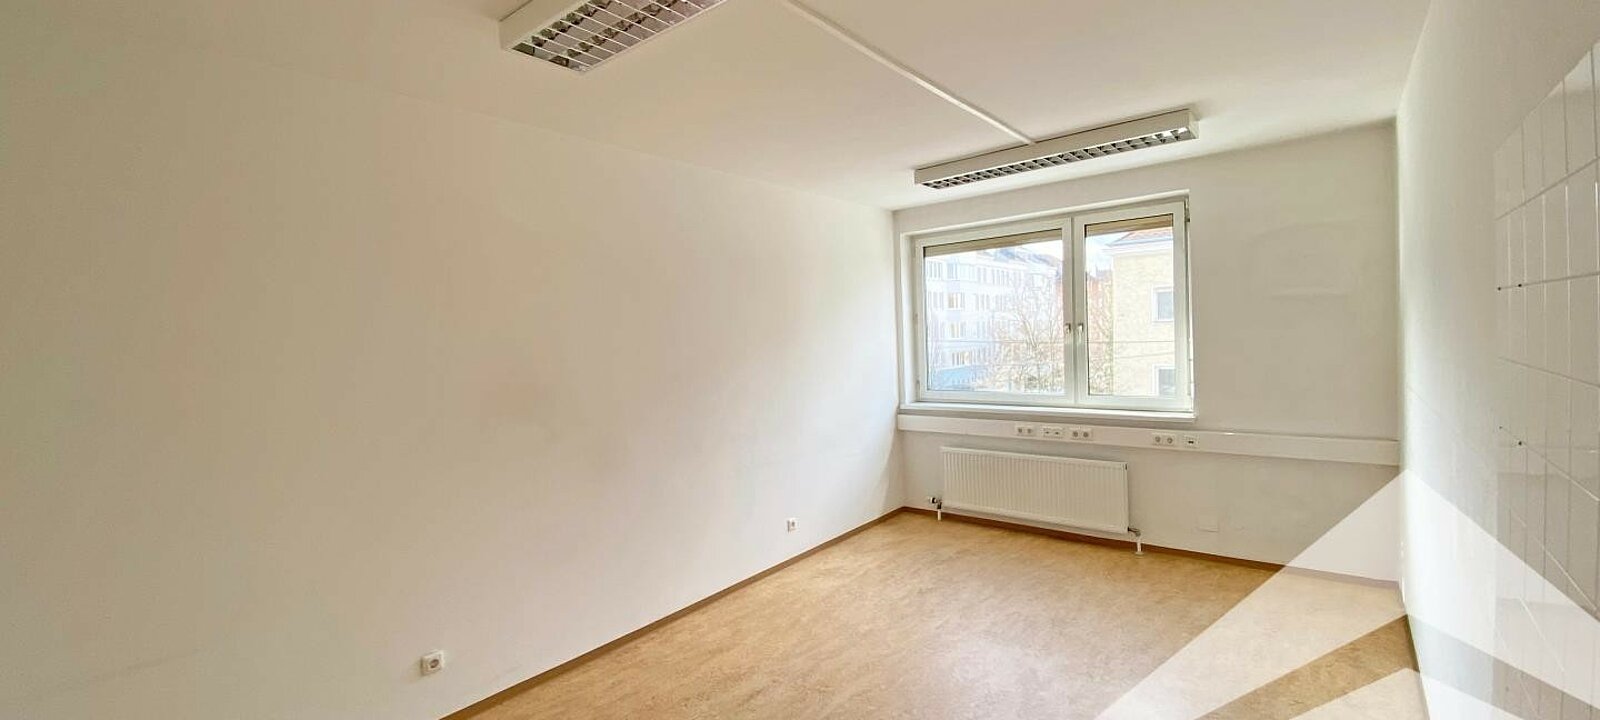 Büro 1 Wienerstrasse 18 m²